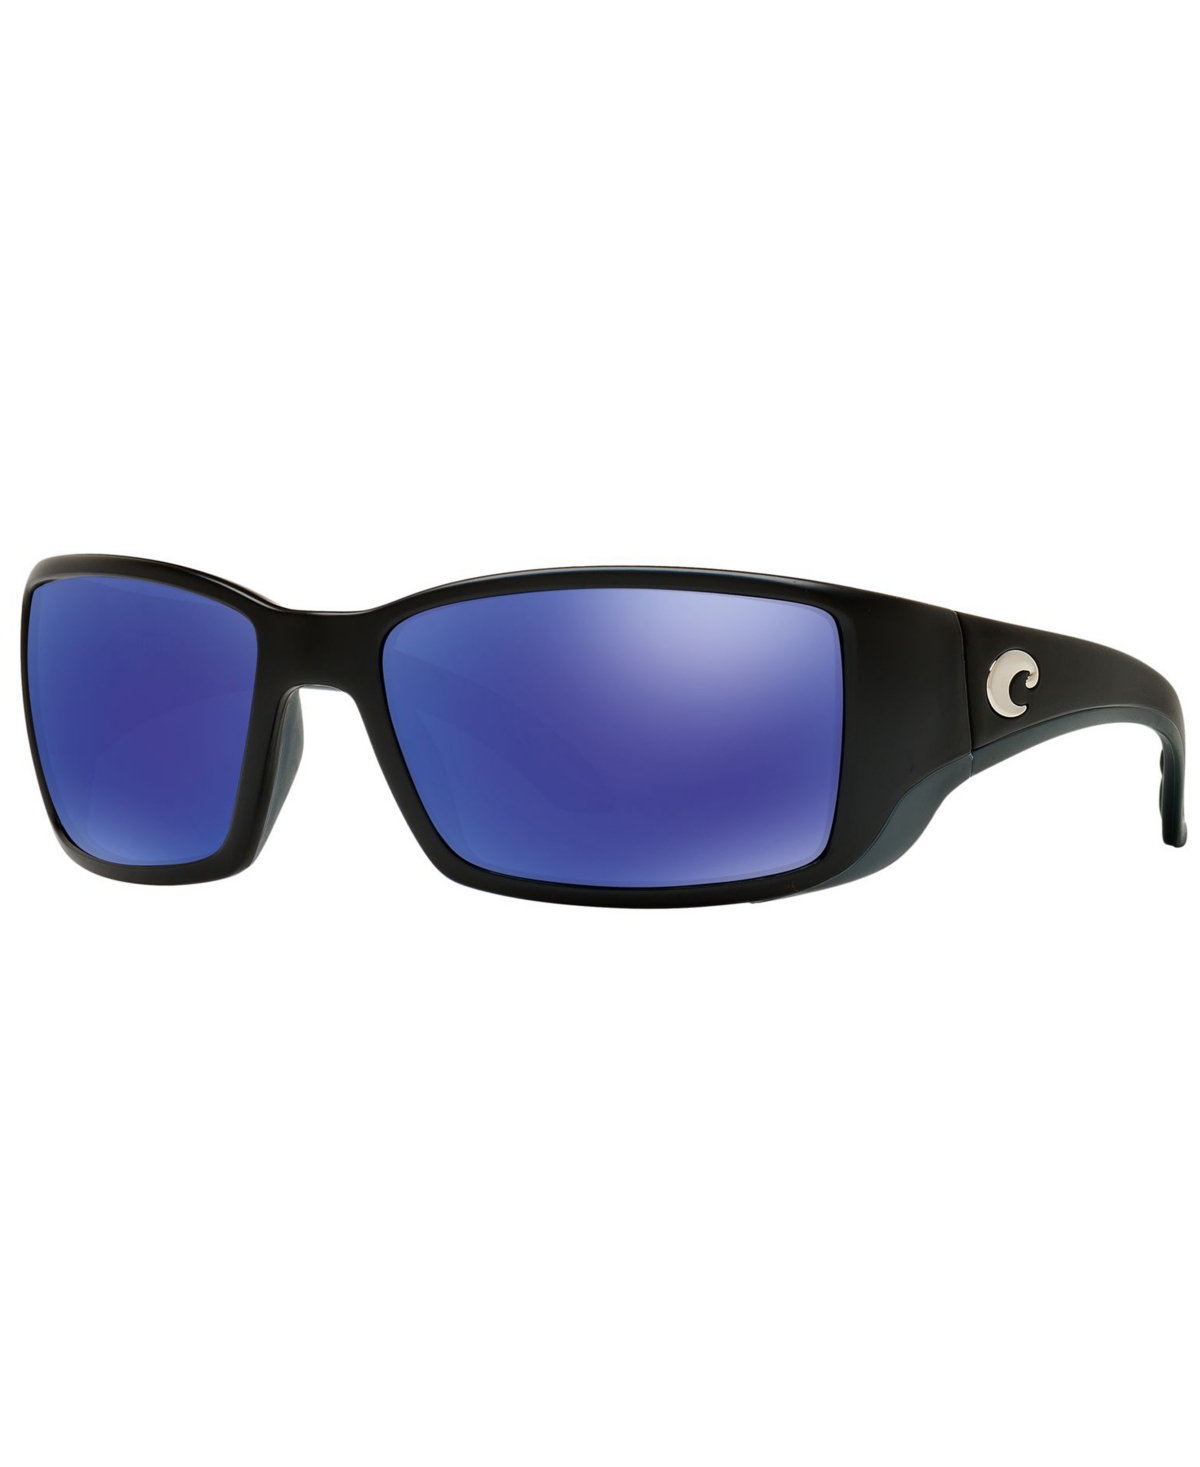 Costa Del Mar Polarized Sunglasses, Blackfin 06s000003 62p In Black,blue Mirror Polar